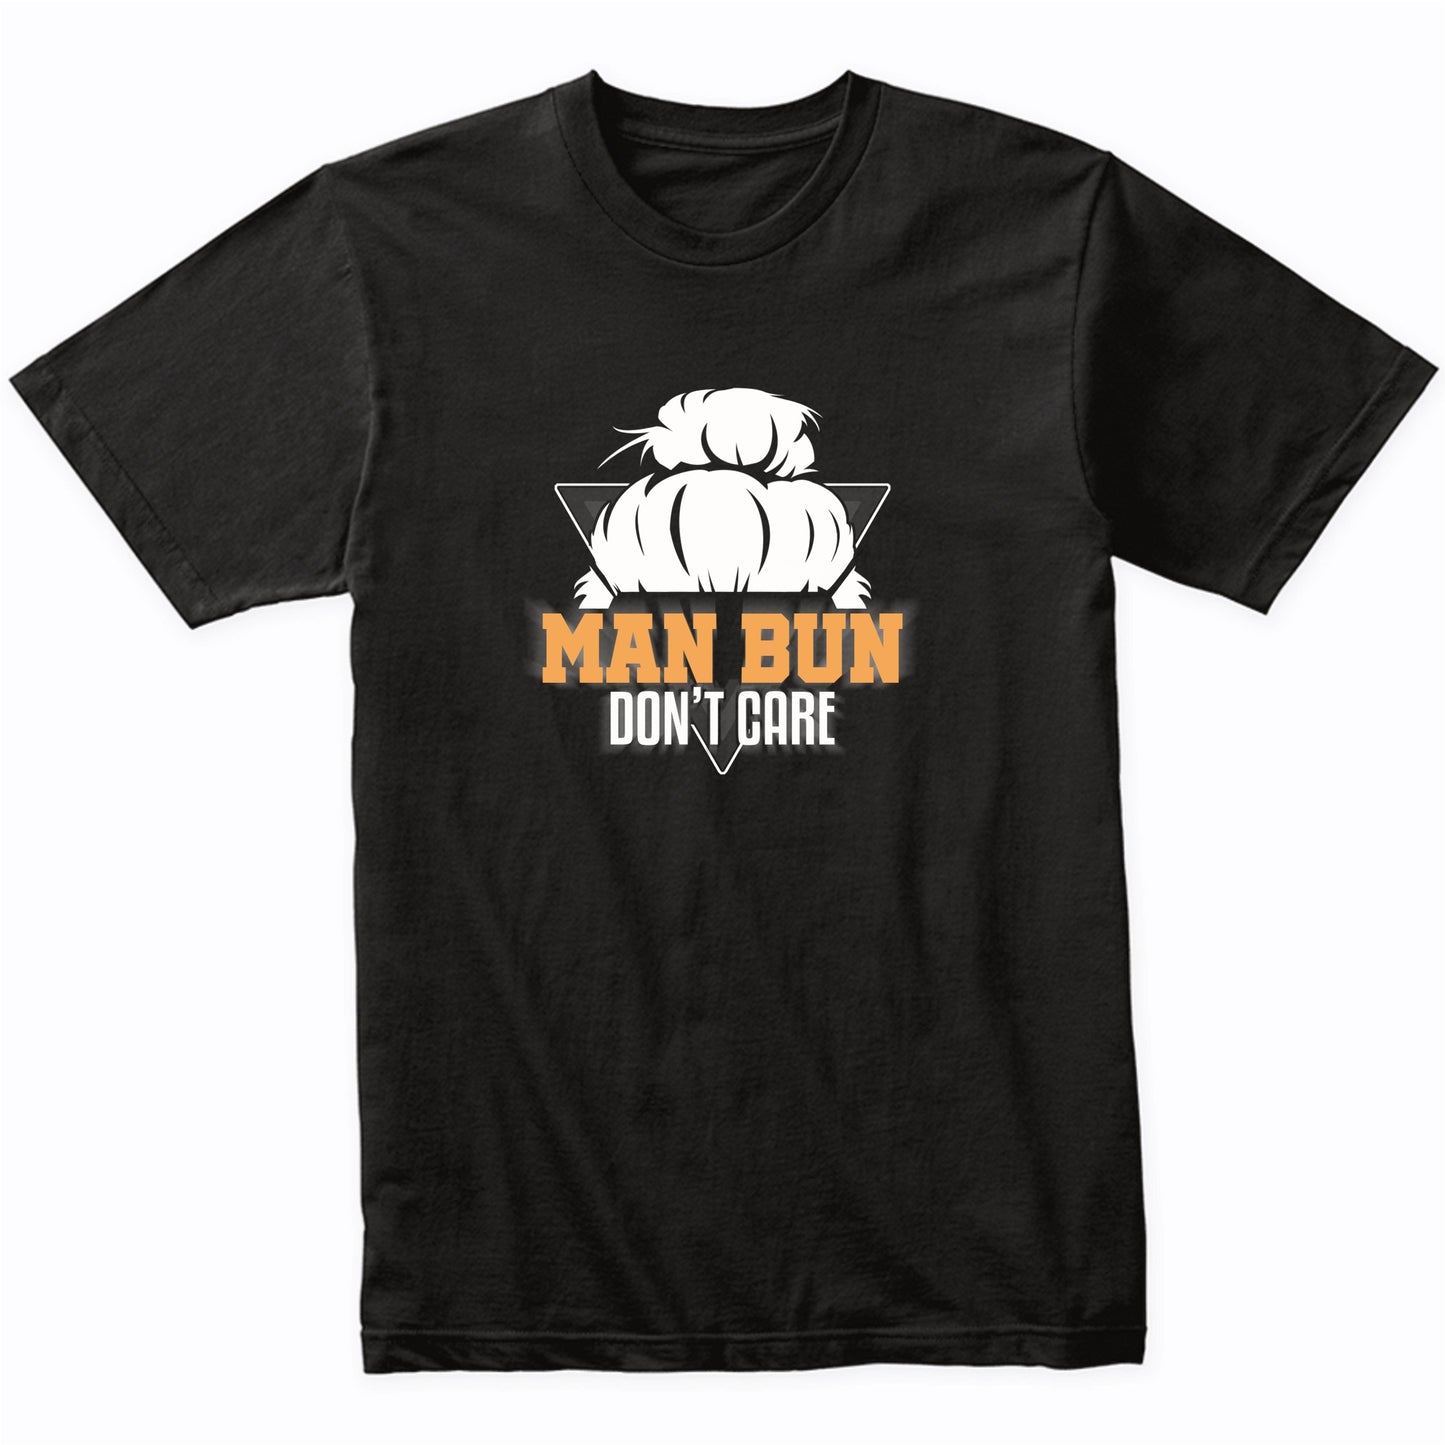 Man Bun Don't Care Funny Man Bun T-Shirt